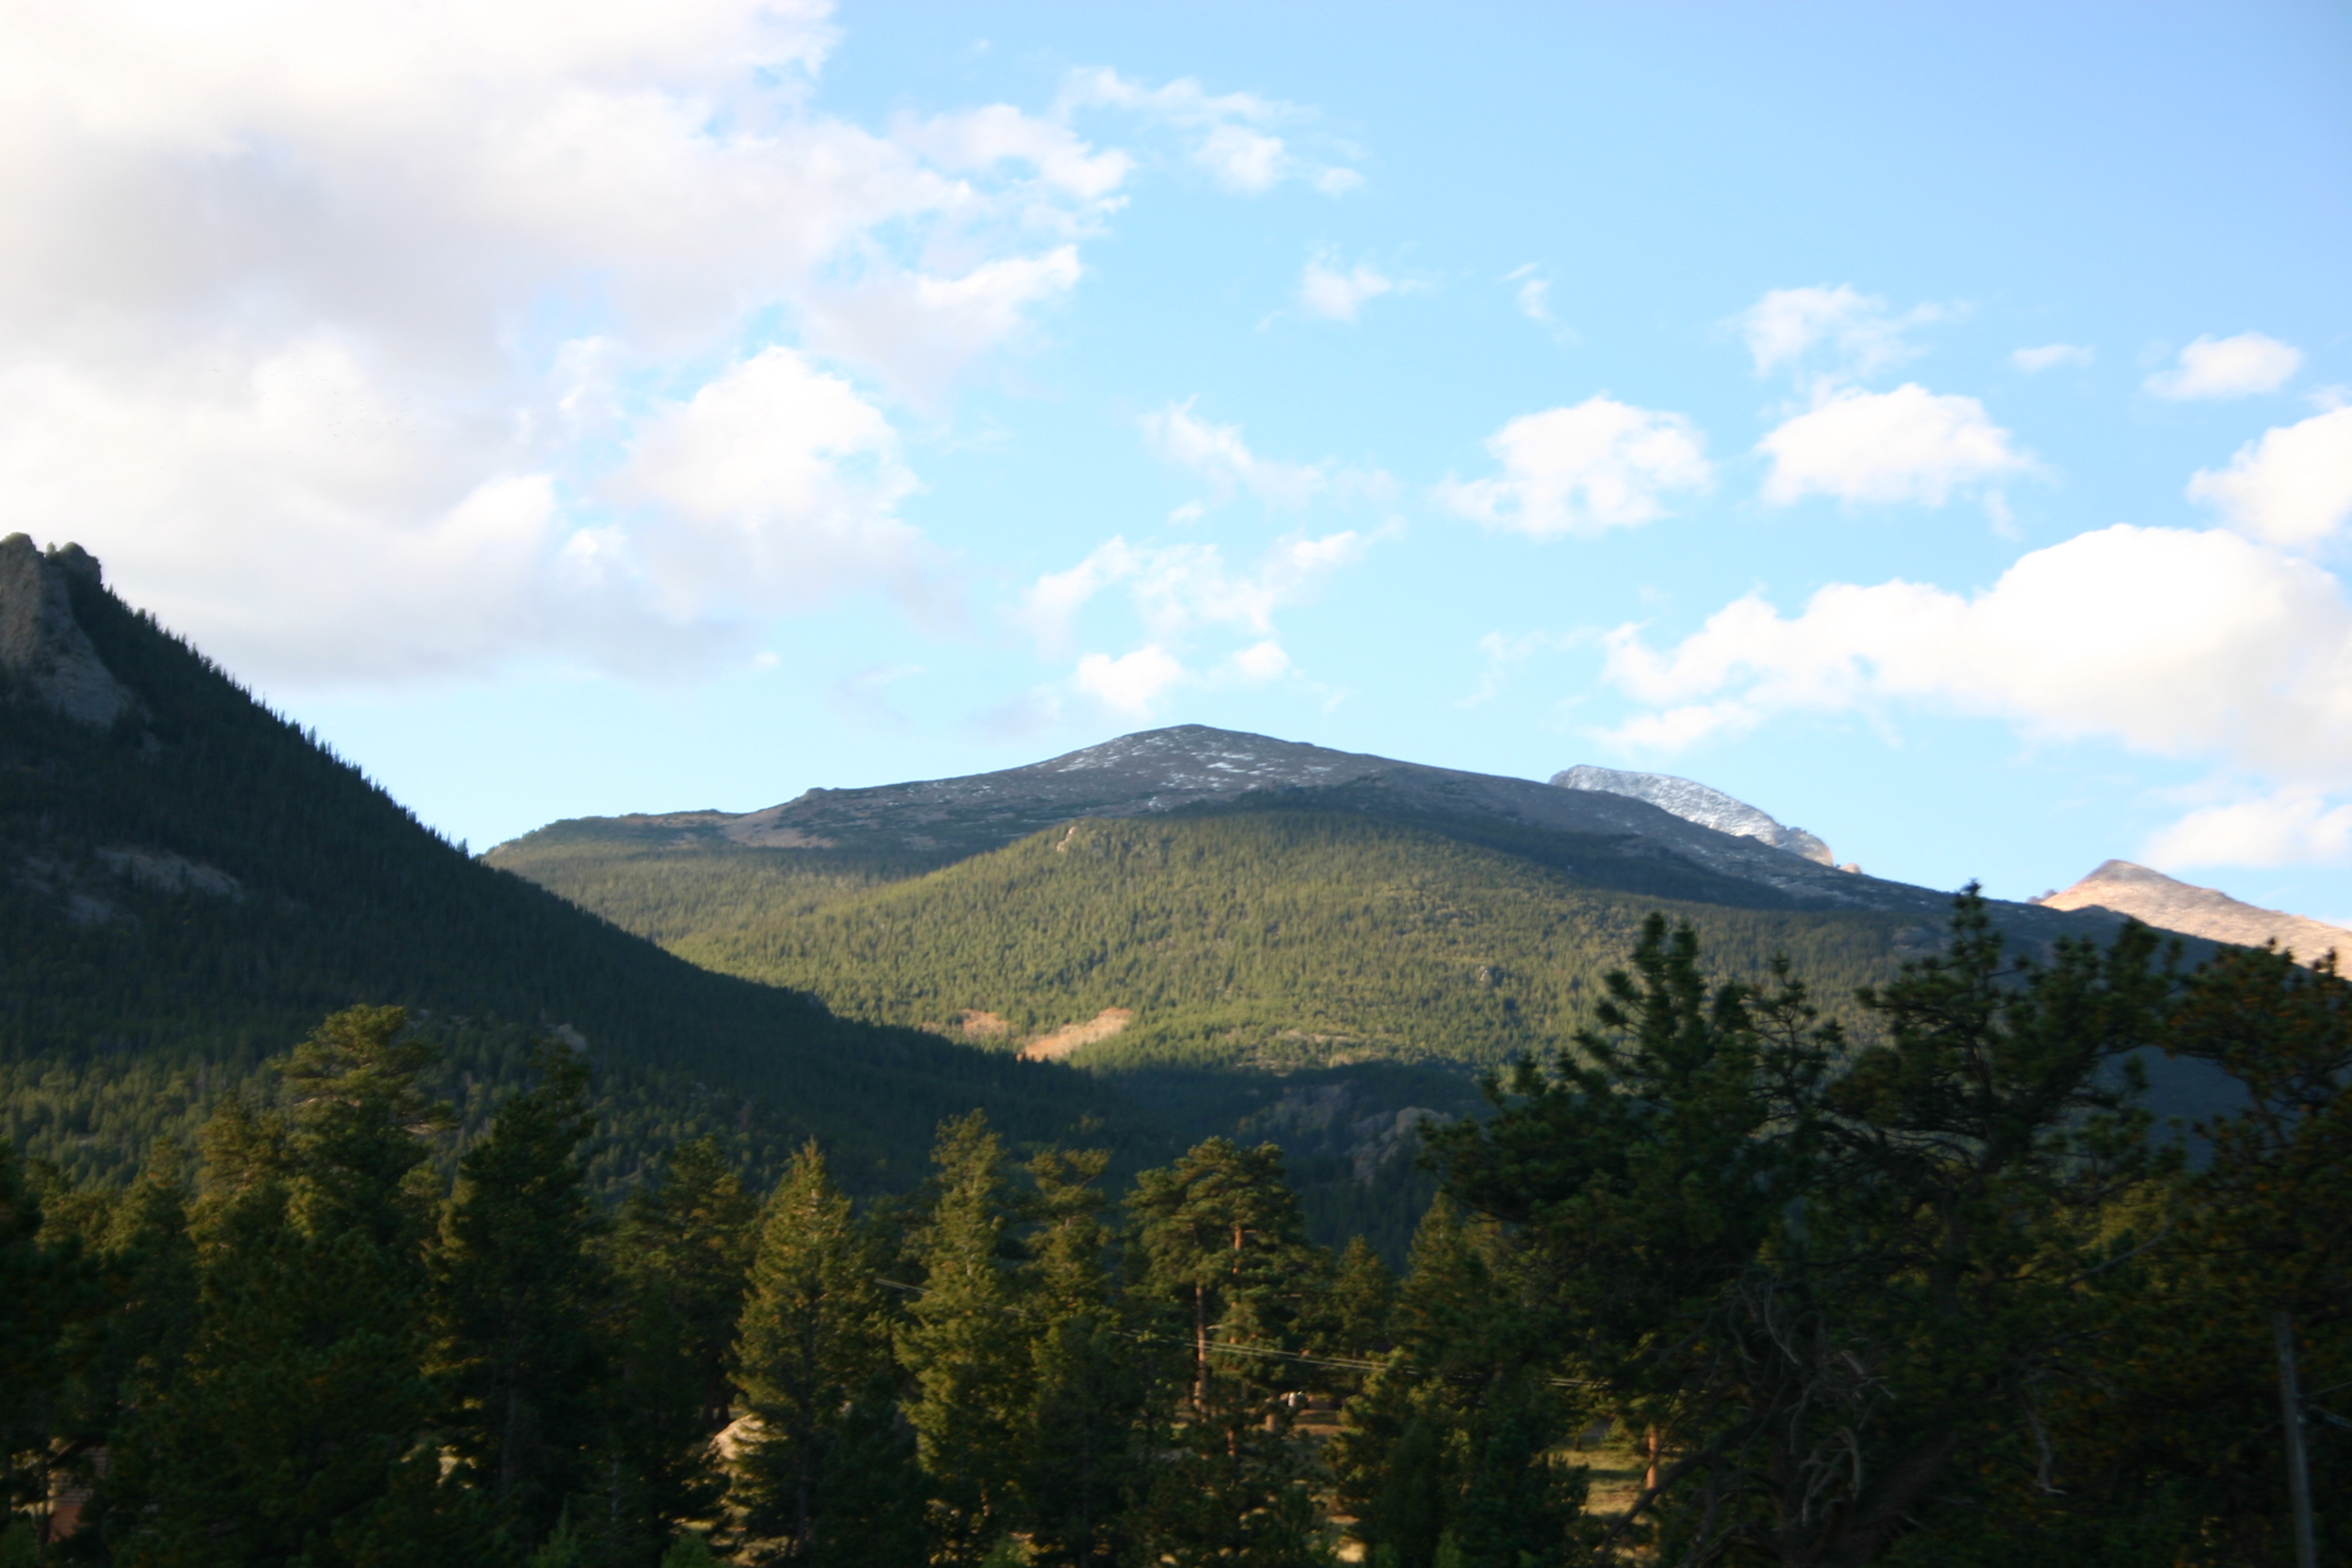 Colorado mountains